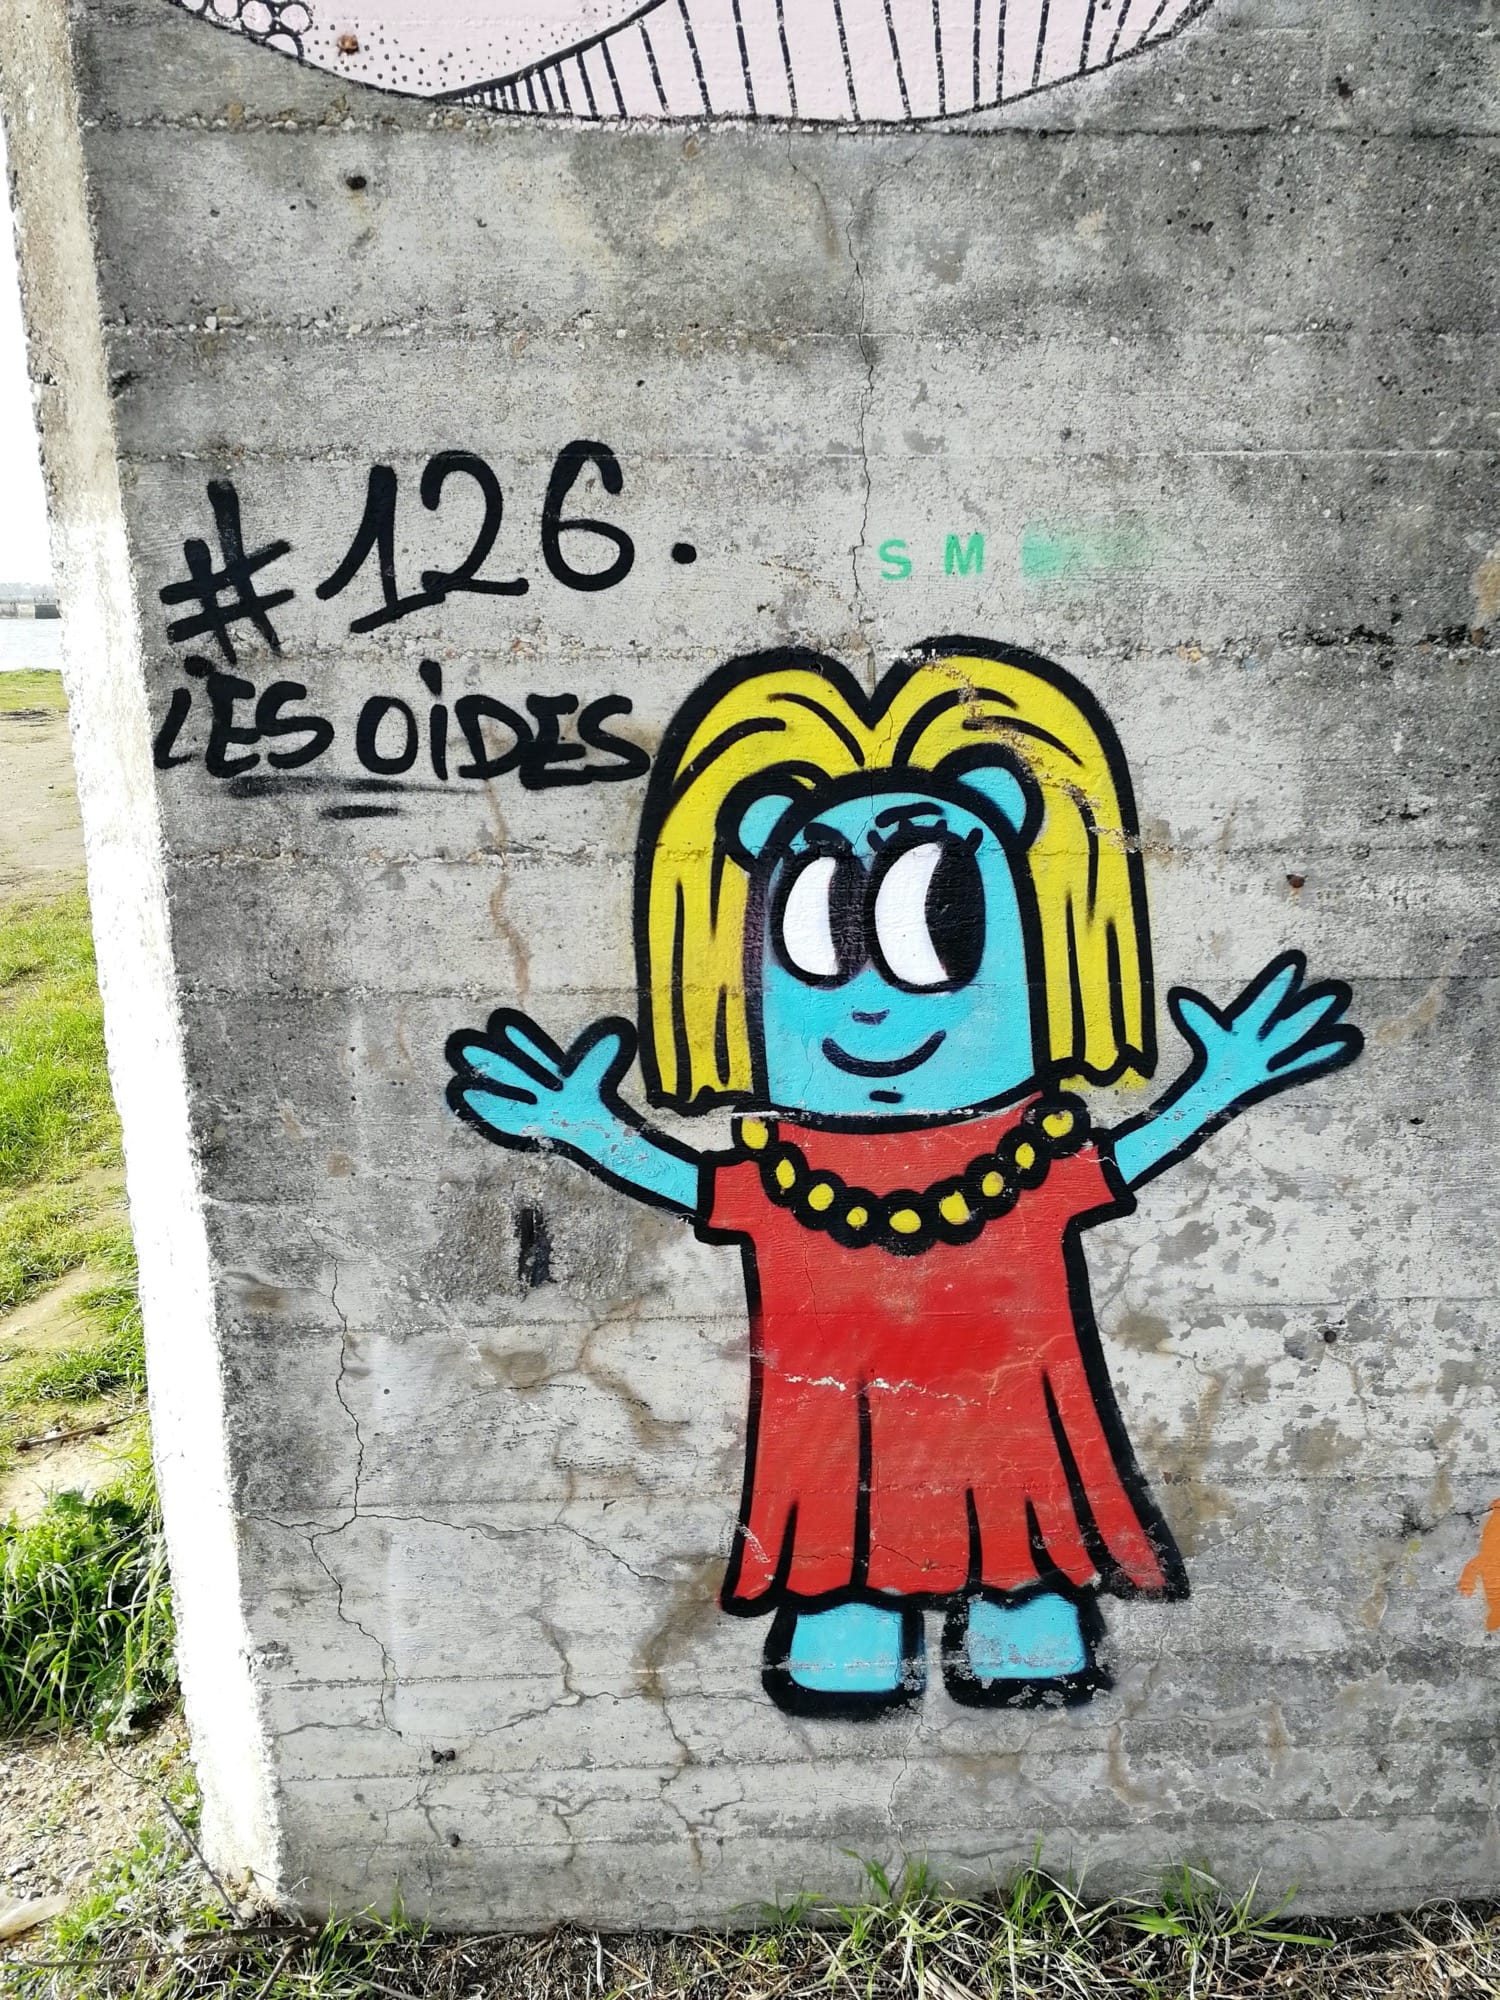 Graffiti 1336 Les oides #126 de Les Oides capturé par Rabot à Saint-Nazaire France